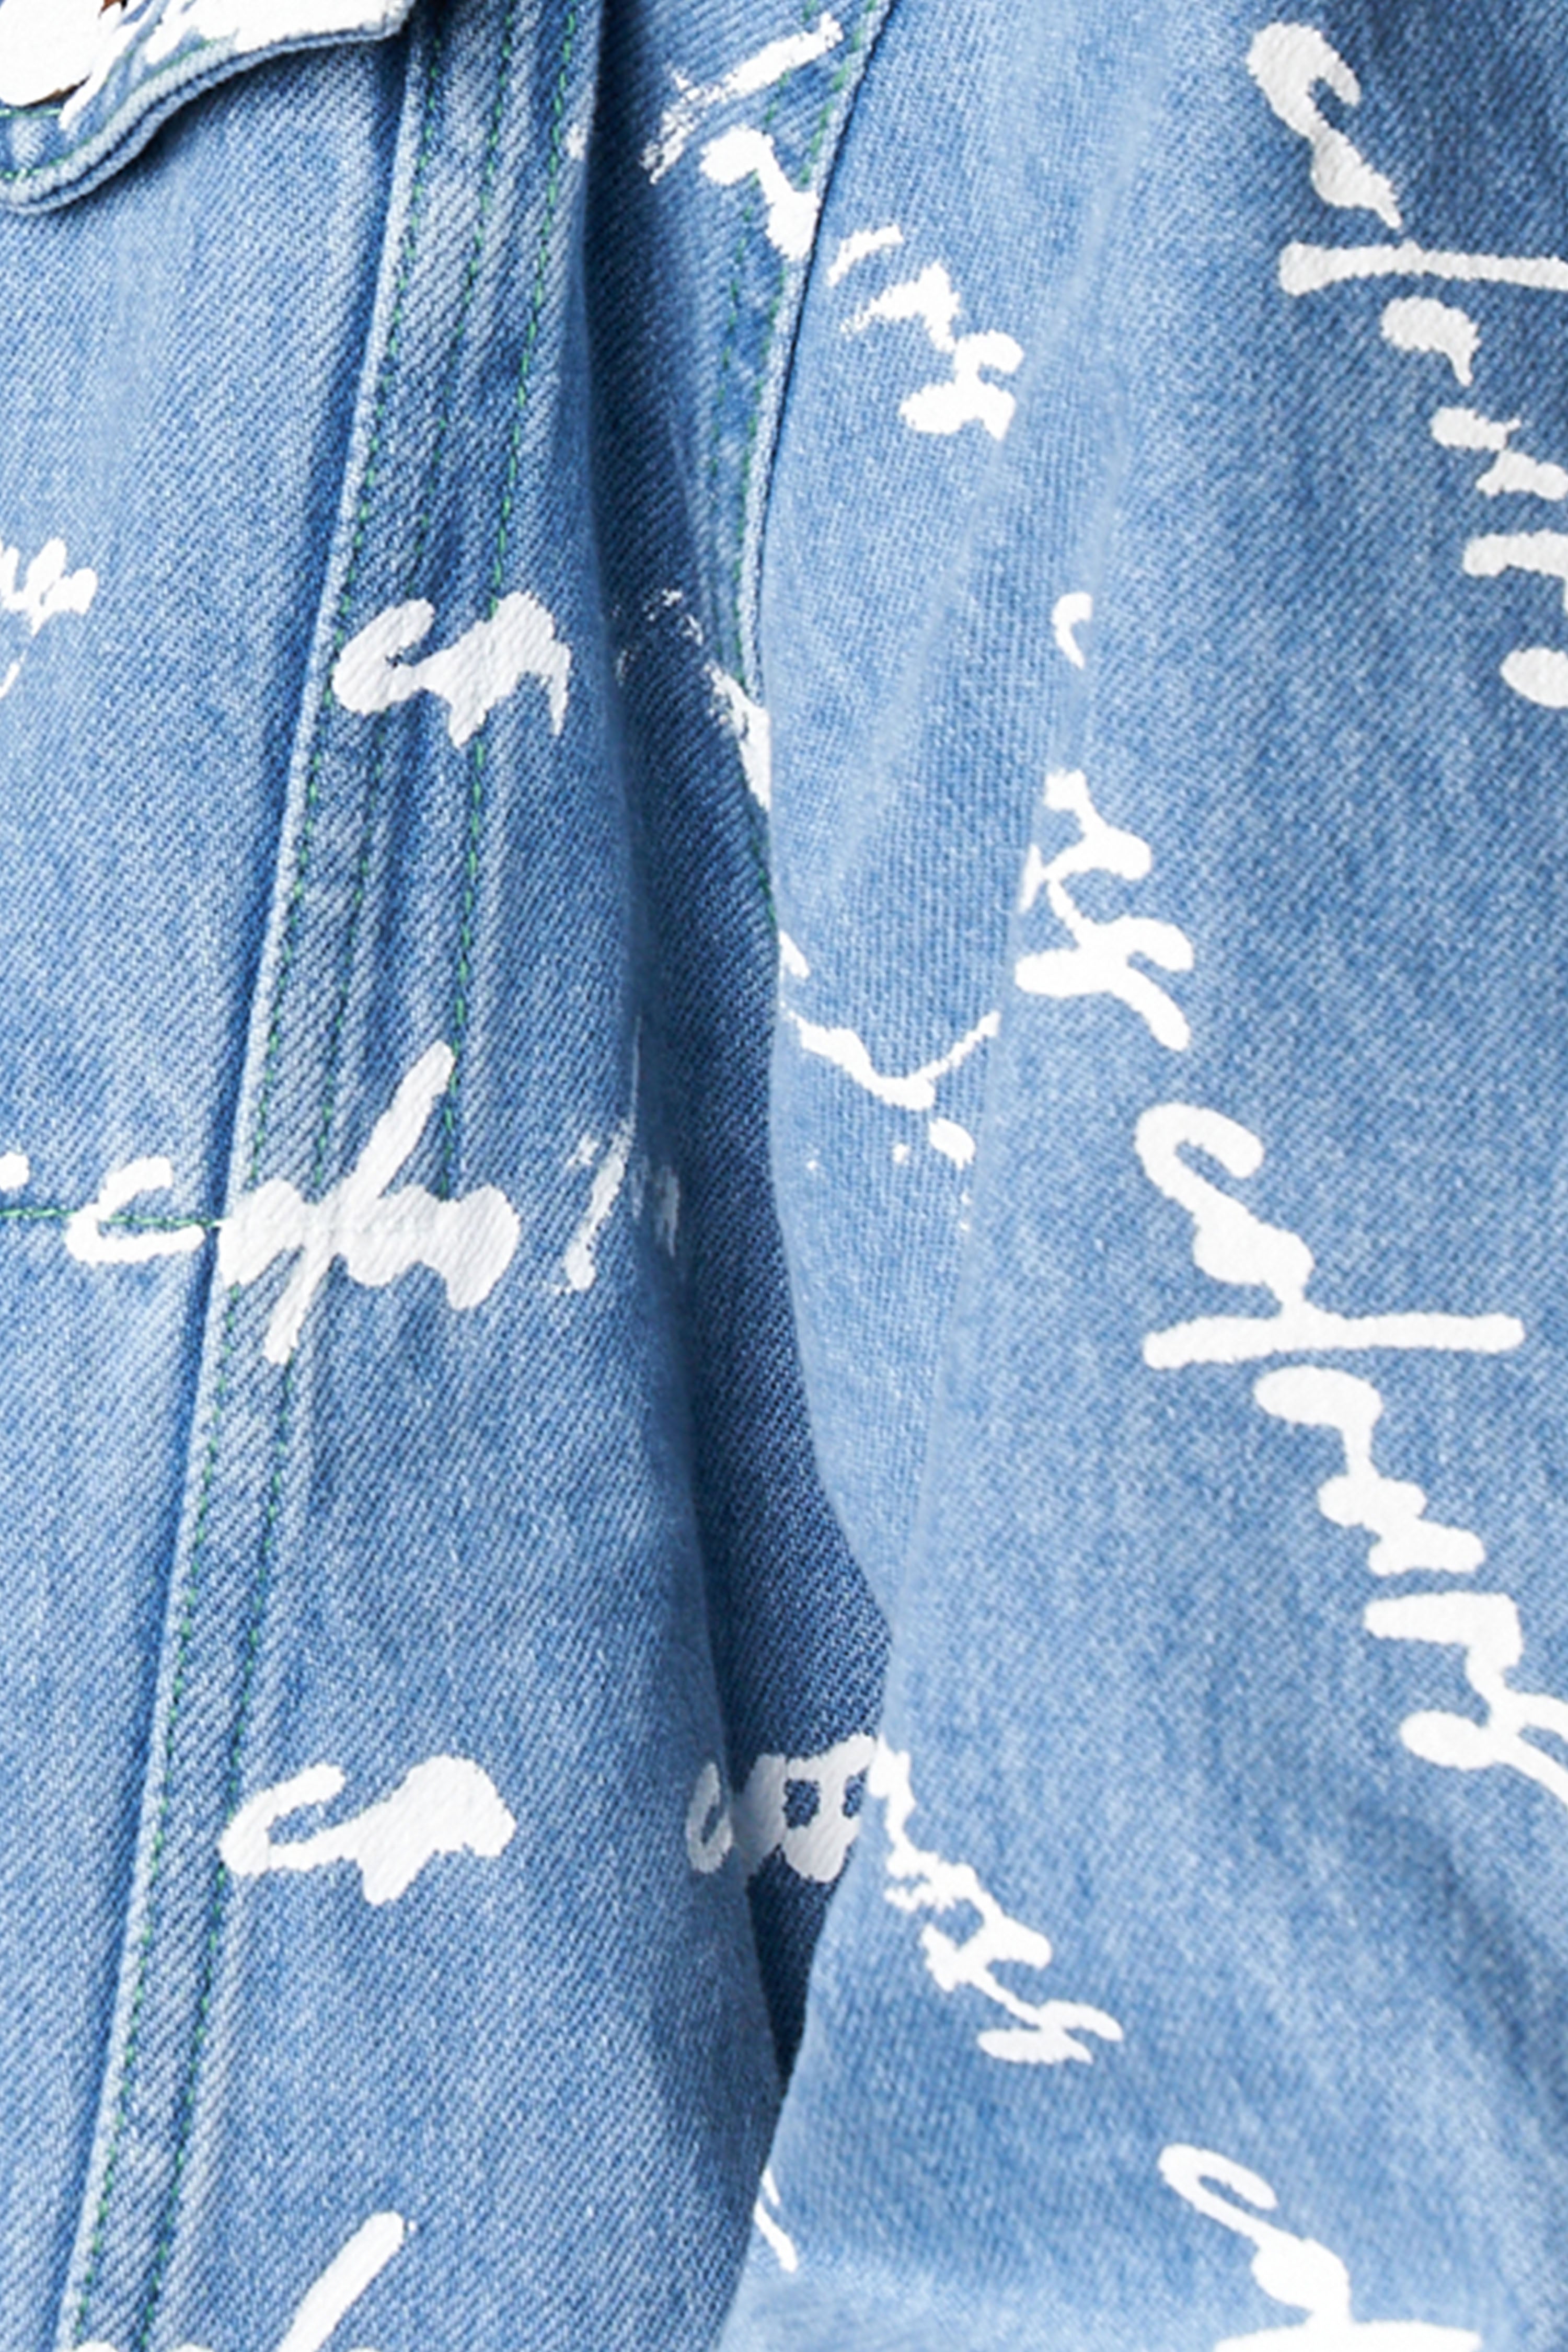 Cross Colours Signature Print Classic Jean Jacket - Vintage Blue